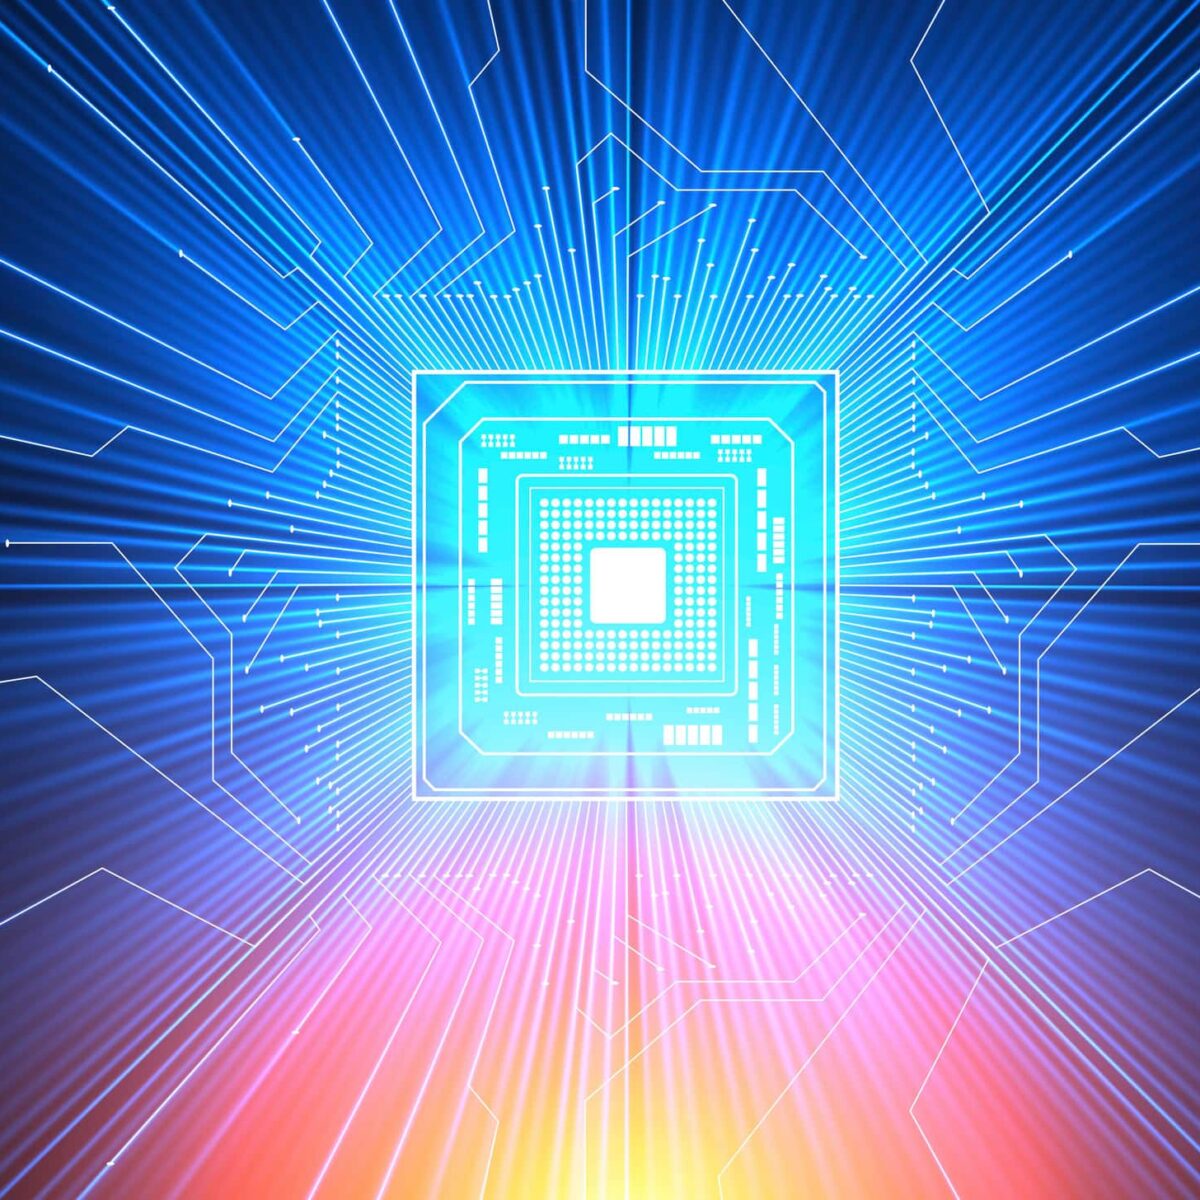 IBM 100000 qubit quantum computer quantum computing